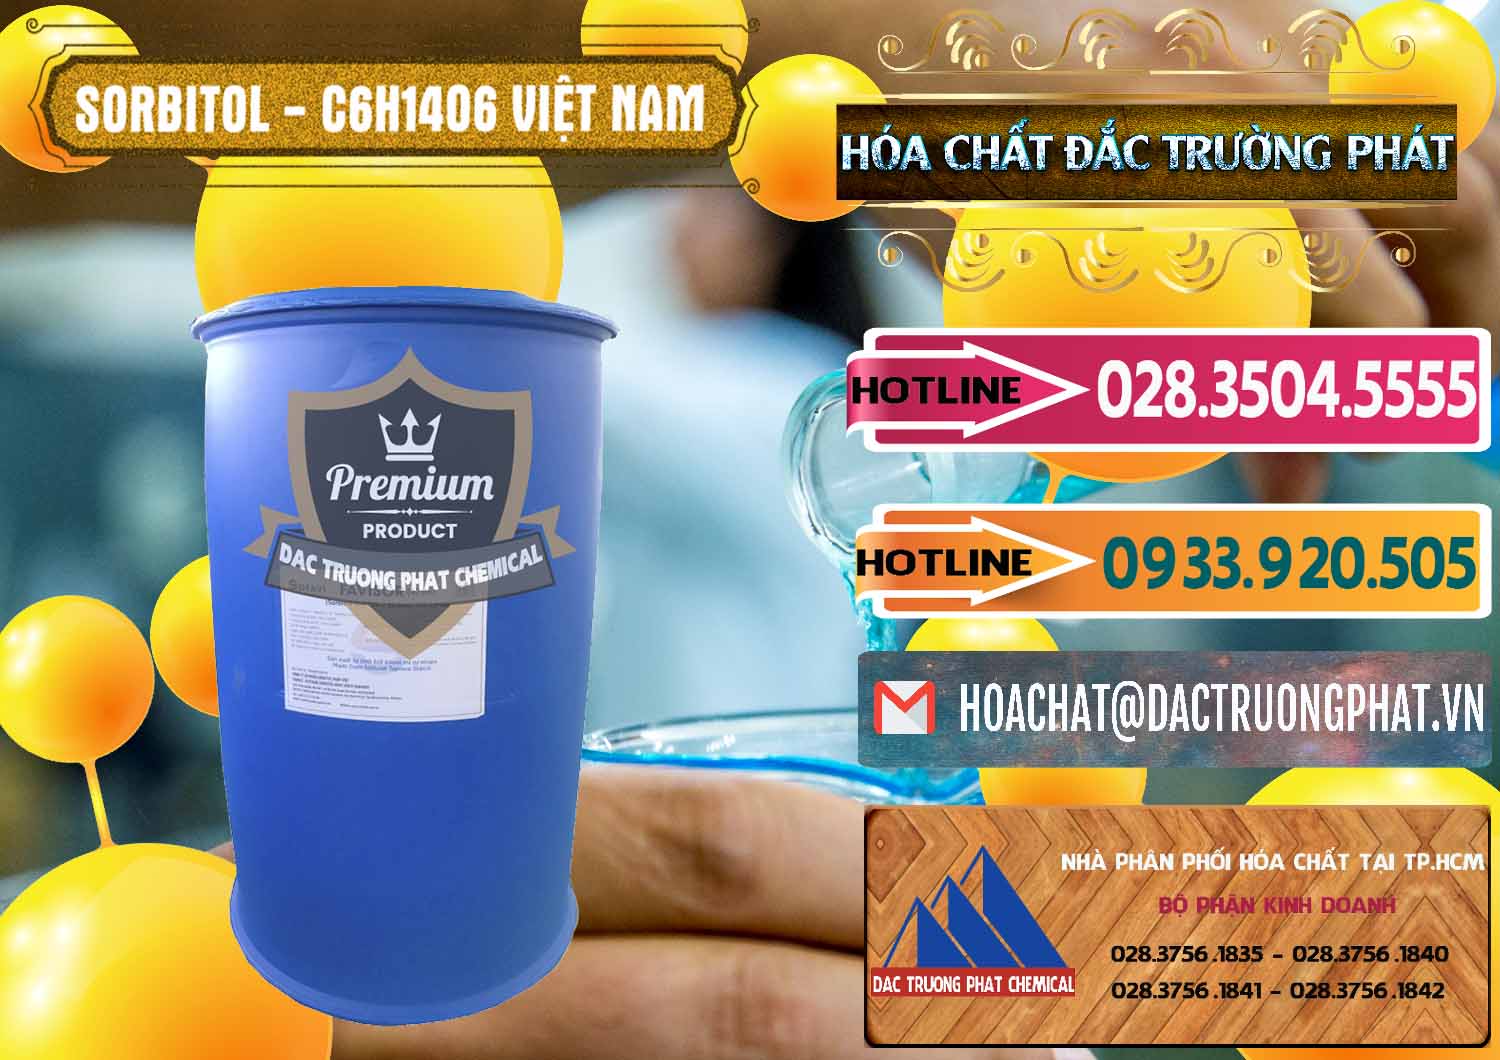 Nơi chuyên phân phối & cung ứng Sorbitol - C6H14O6 Lỏng 70% Food Grade Việt Nam - 0438 - Nơi phân phối và kinh doanh hóa chất tại TP.HCM - dactruongphat.vn